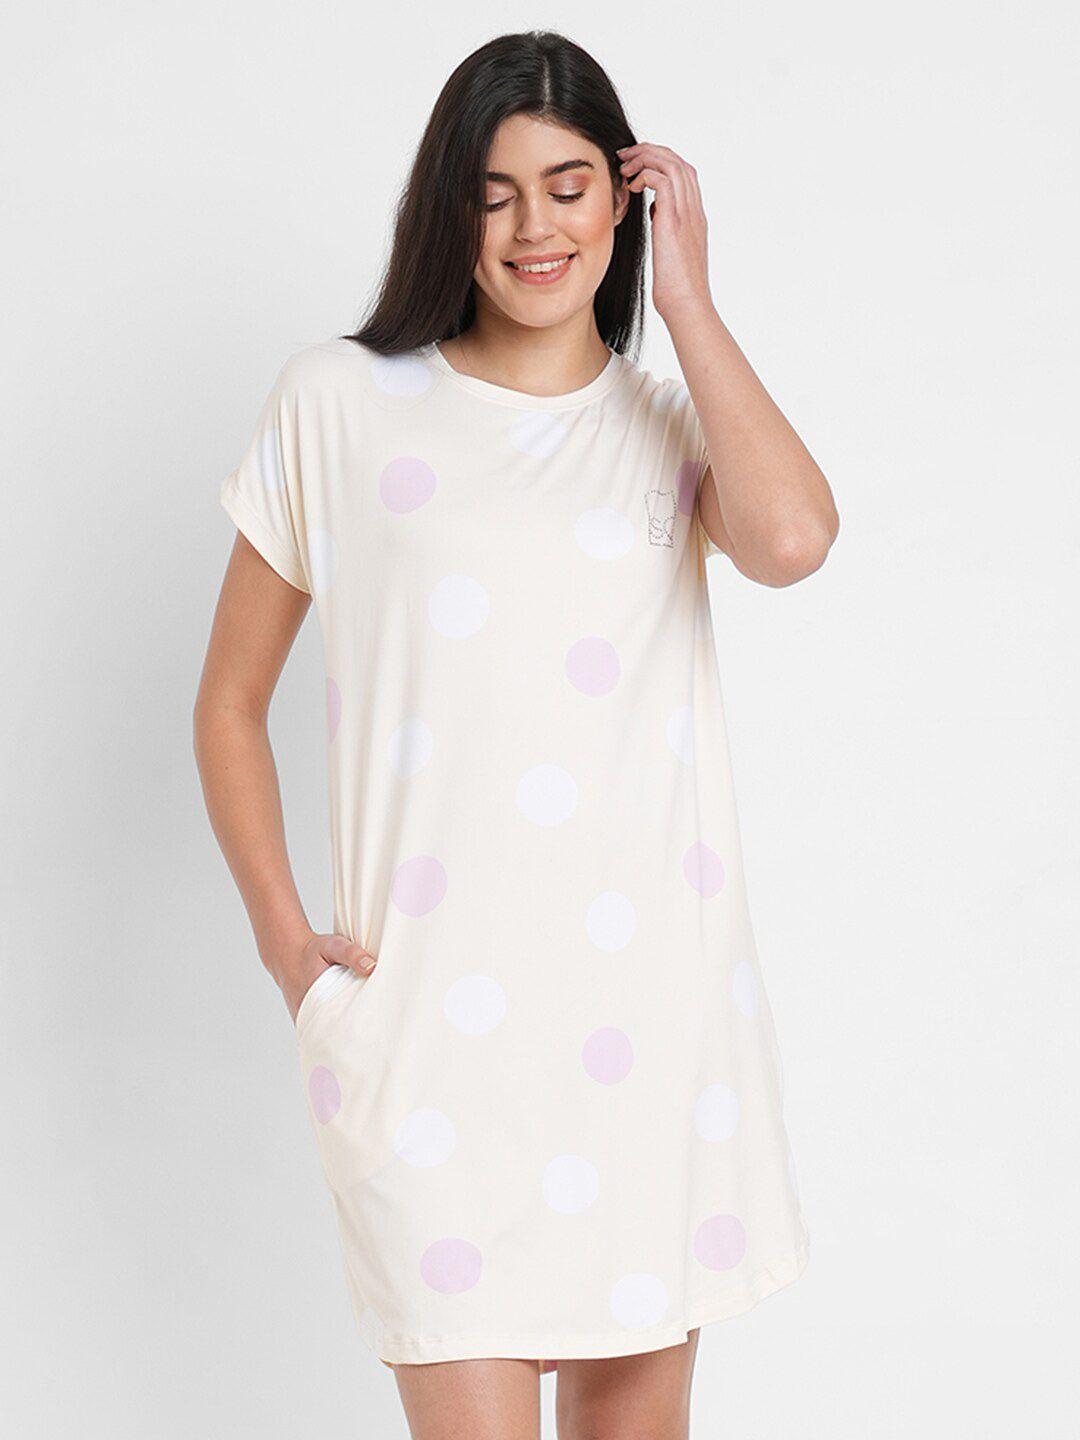 sweet dreams polka dots printed nightdress